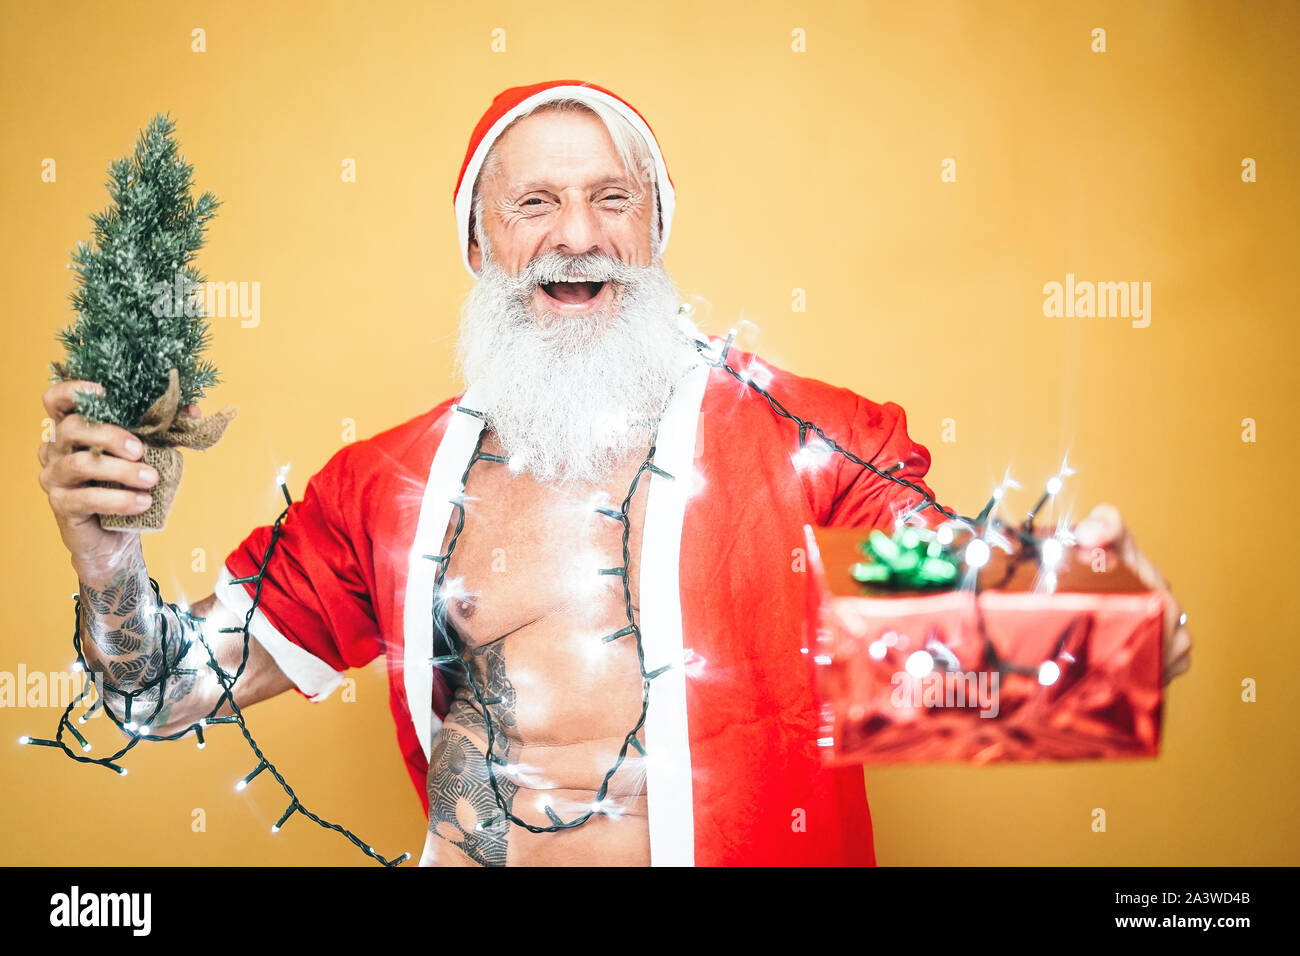 Hipster tatouage heureux père noël équipées de feux blancs donnant des  cadeaux de Noël - Noël barbe à la mode de porter des vêtements hauts et  holding presents Photo Stock - Alamy